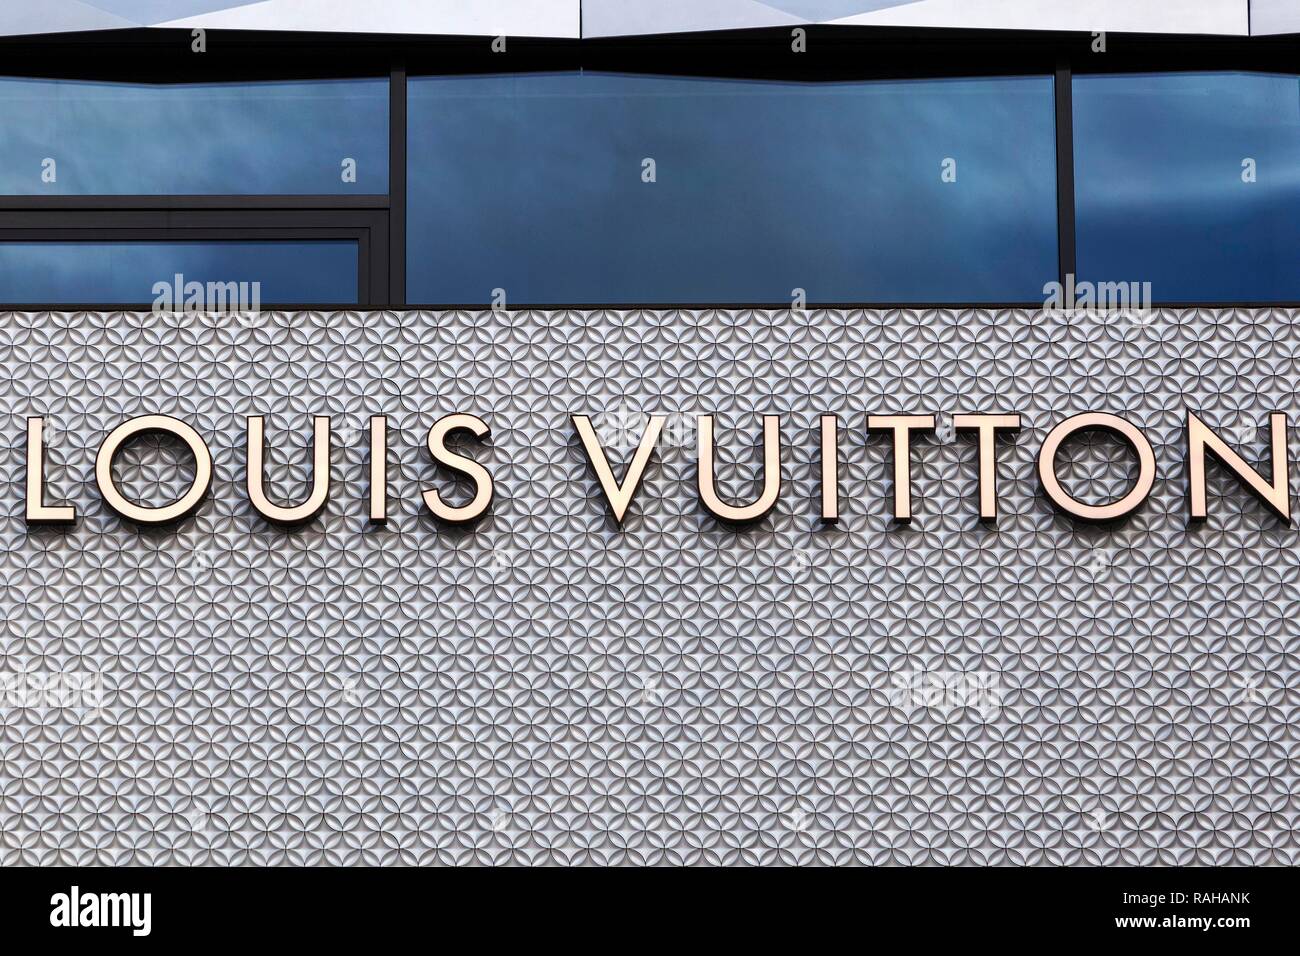 Writing on house facade, fashion shop Louis Vuitton, Dorotheen Quartier, DOQU, architect Behnisch, Stuttgart, Baden-Württemberg Stock Photo